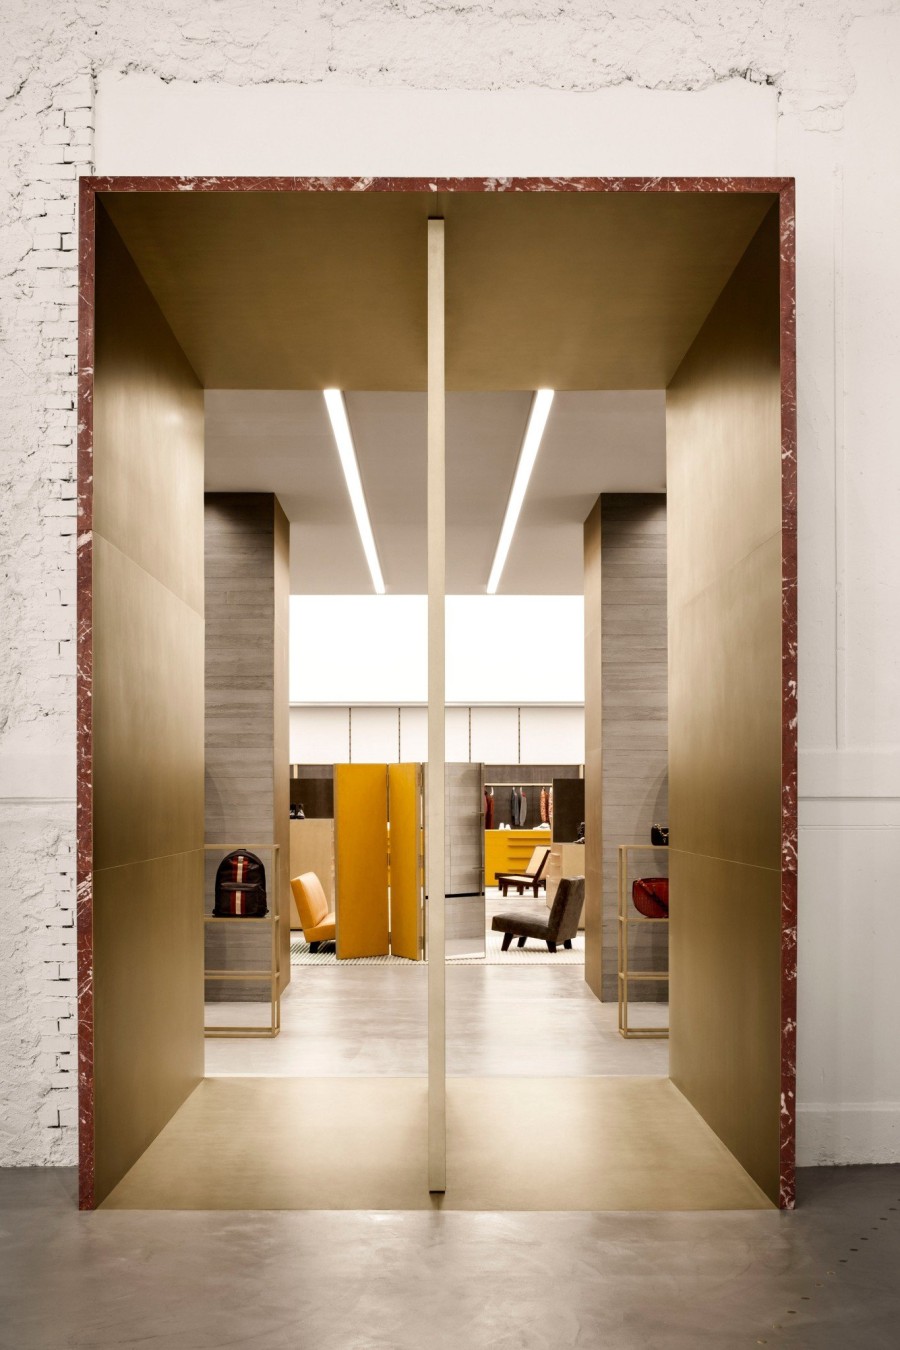 Ένα υπέροχο, νέο showroom ενός διάσημου οίκου άνοιξε τις πύλες του στο Μιλάνο- Φωτογραφία 2